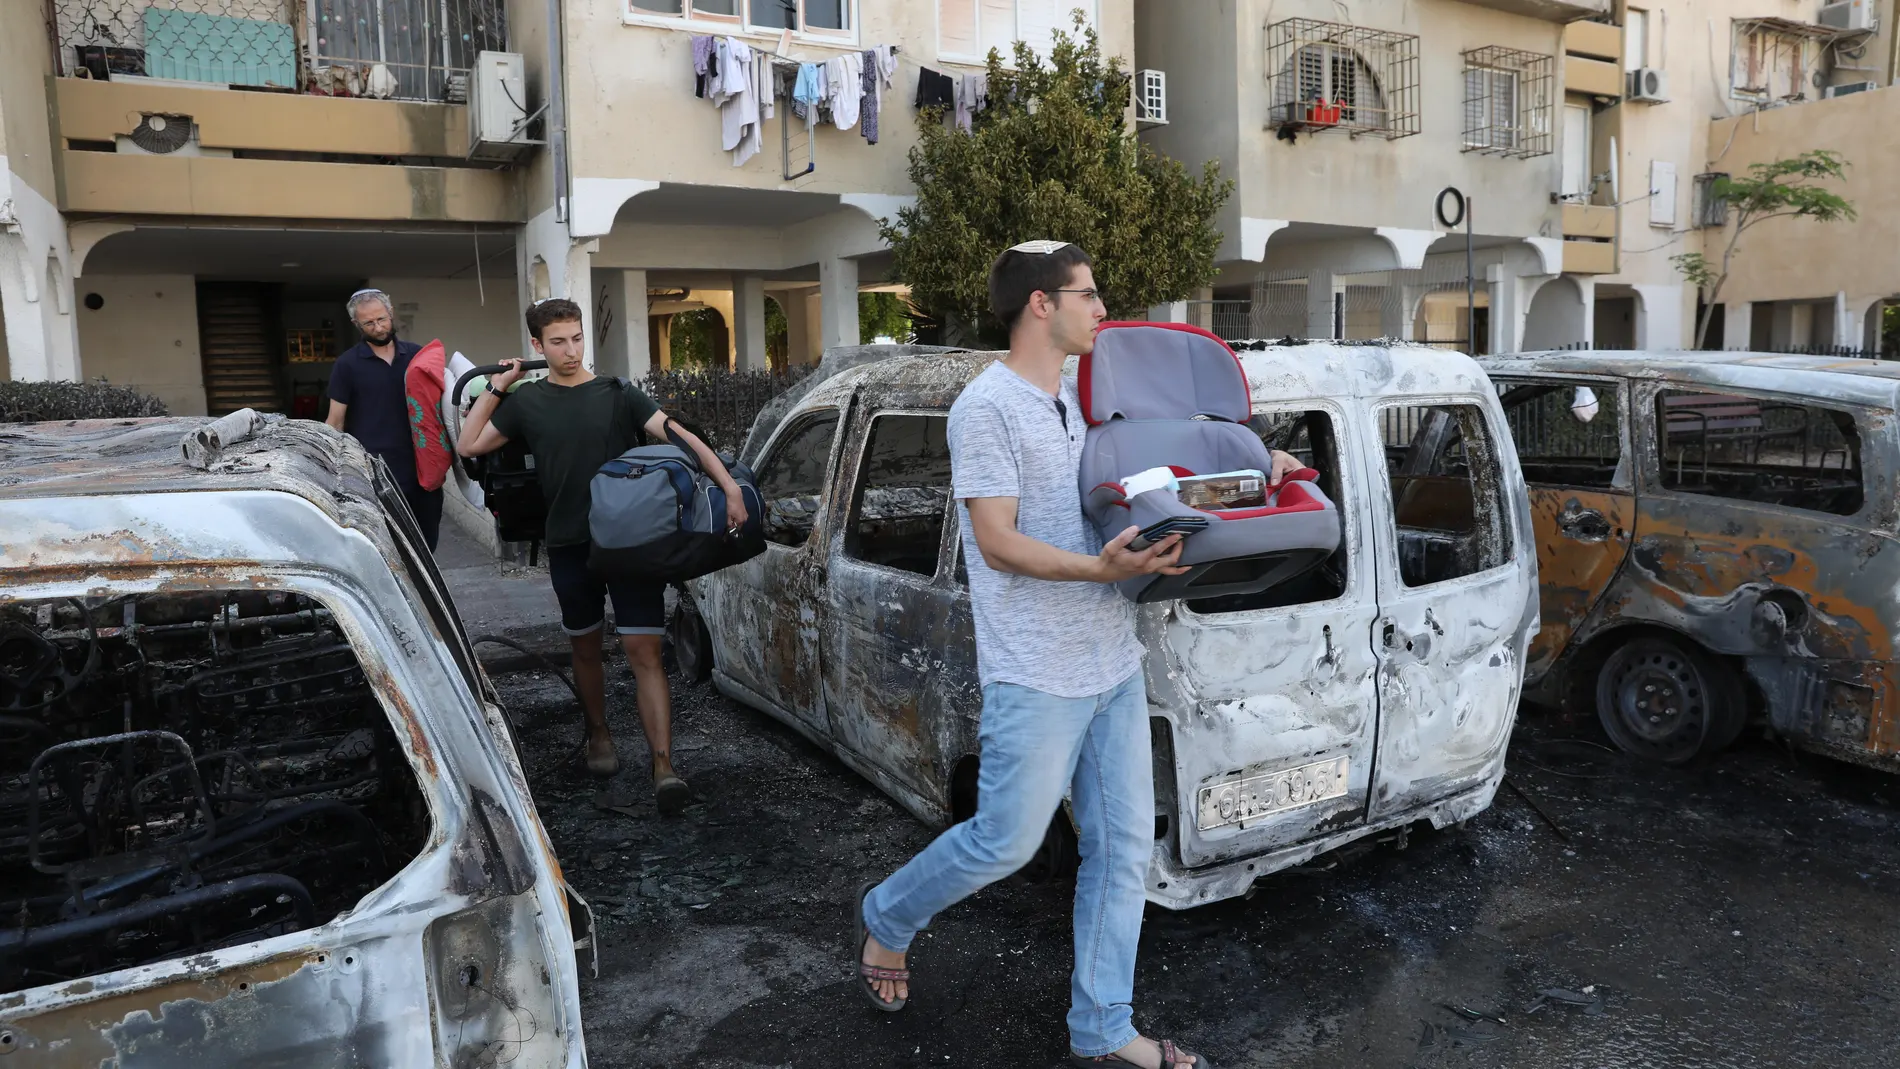 Residentes judíos pasan junto a automóviles quemados tras los disturbios ocurridos durante la noche entre residentes árabes y judíos en Lod, Israel, el 12 de mayo de 2021